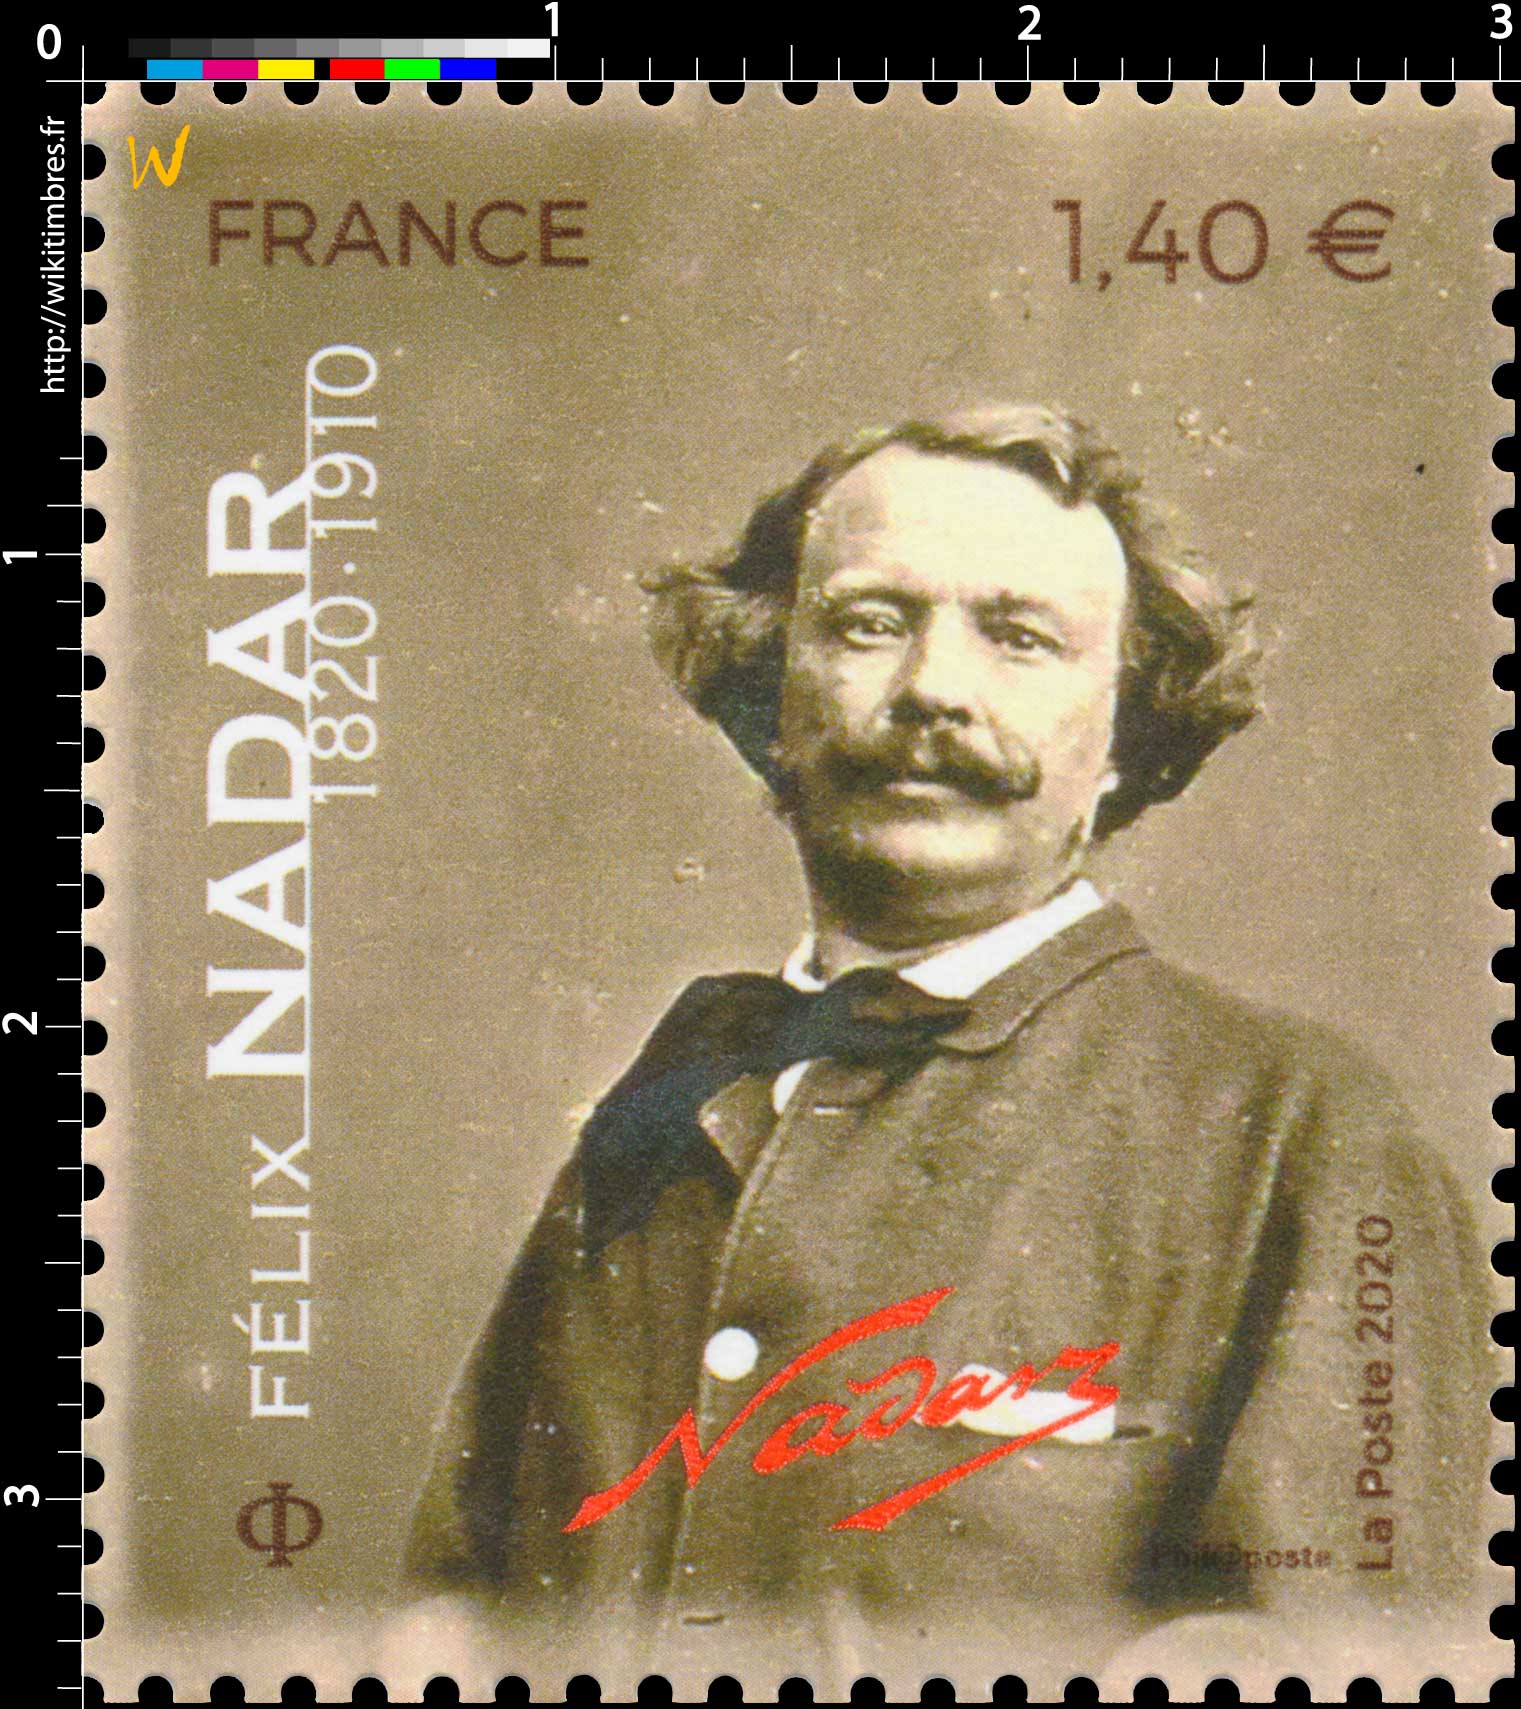 2020 Félix Nadar 1820 - 1910